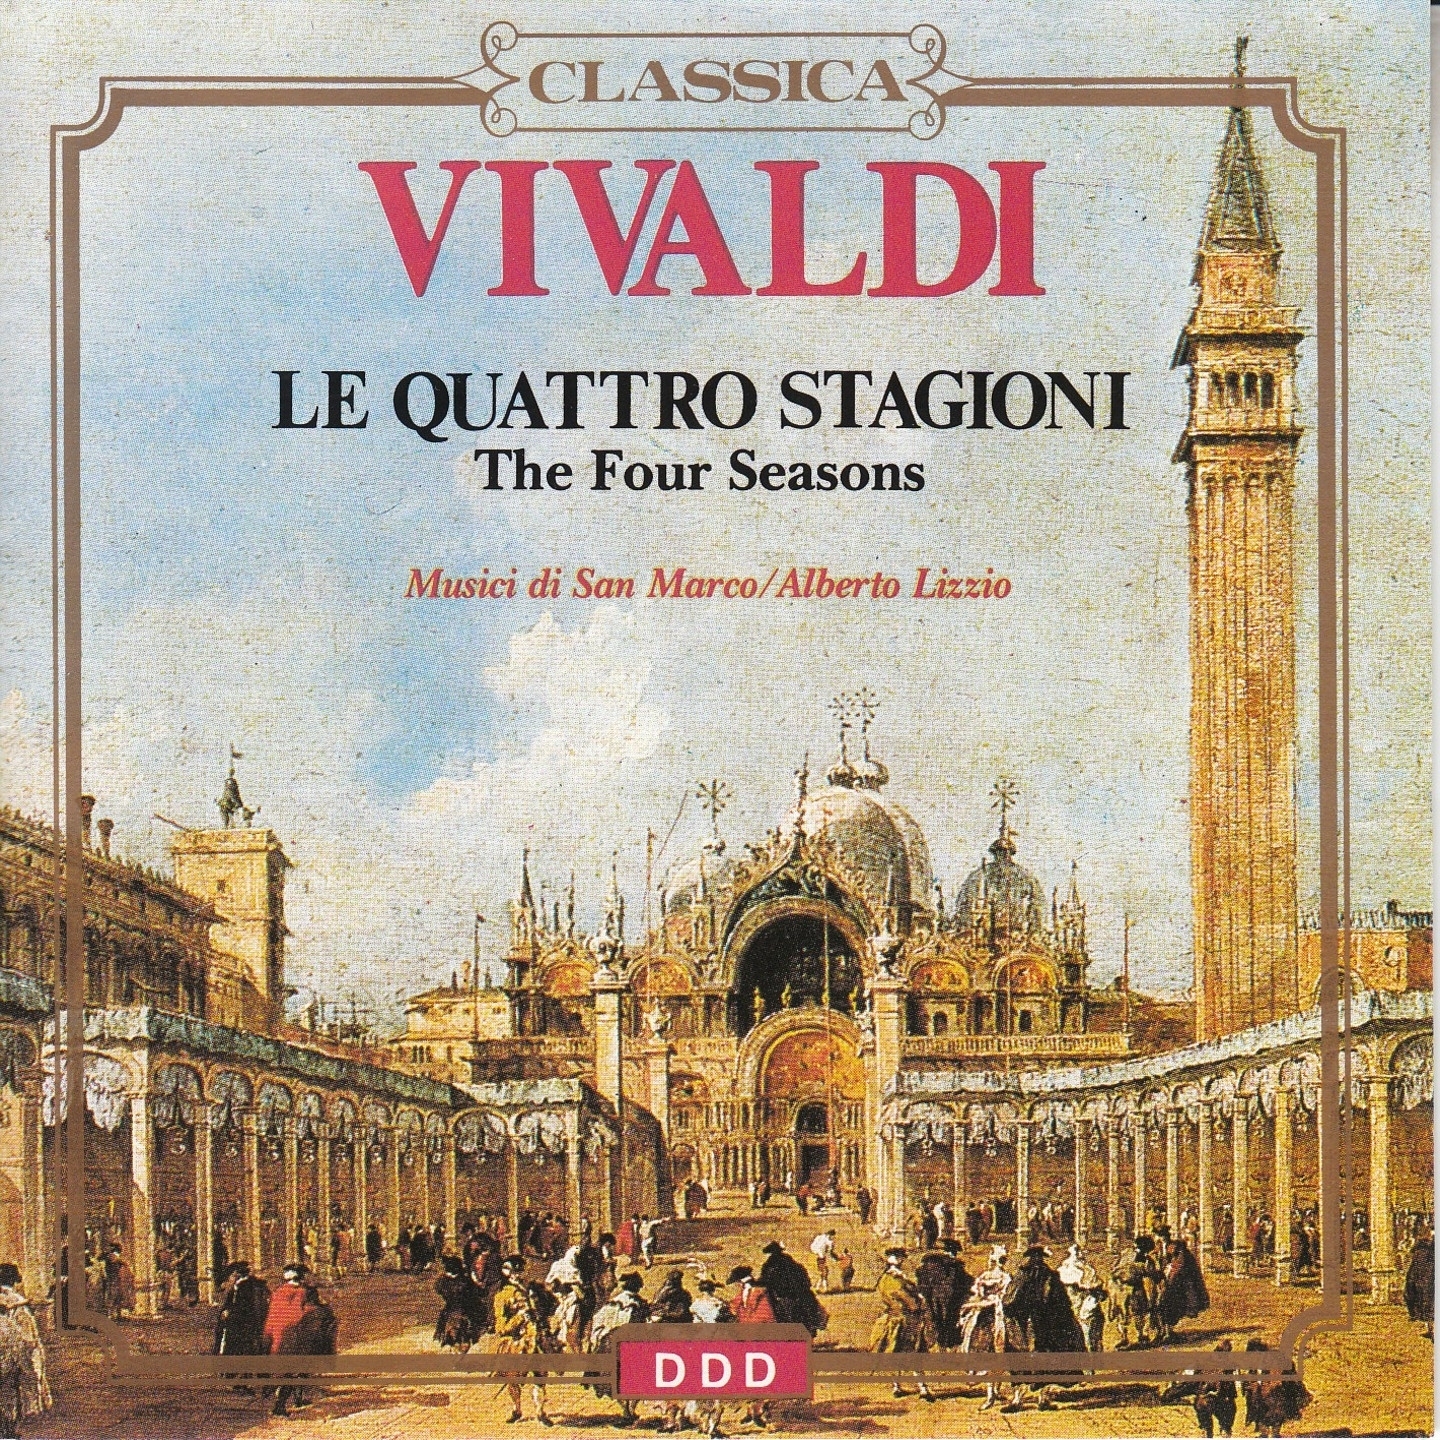 The Four Seasons, Violin Concerto No. 2 in G Minor, RV 315 "Summer": I. Allegro non molto